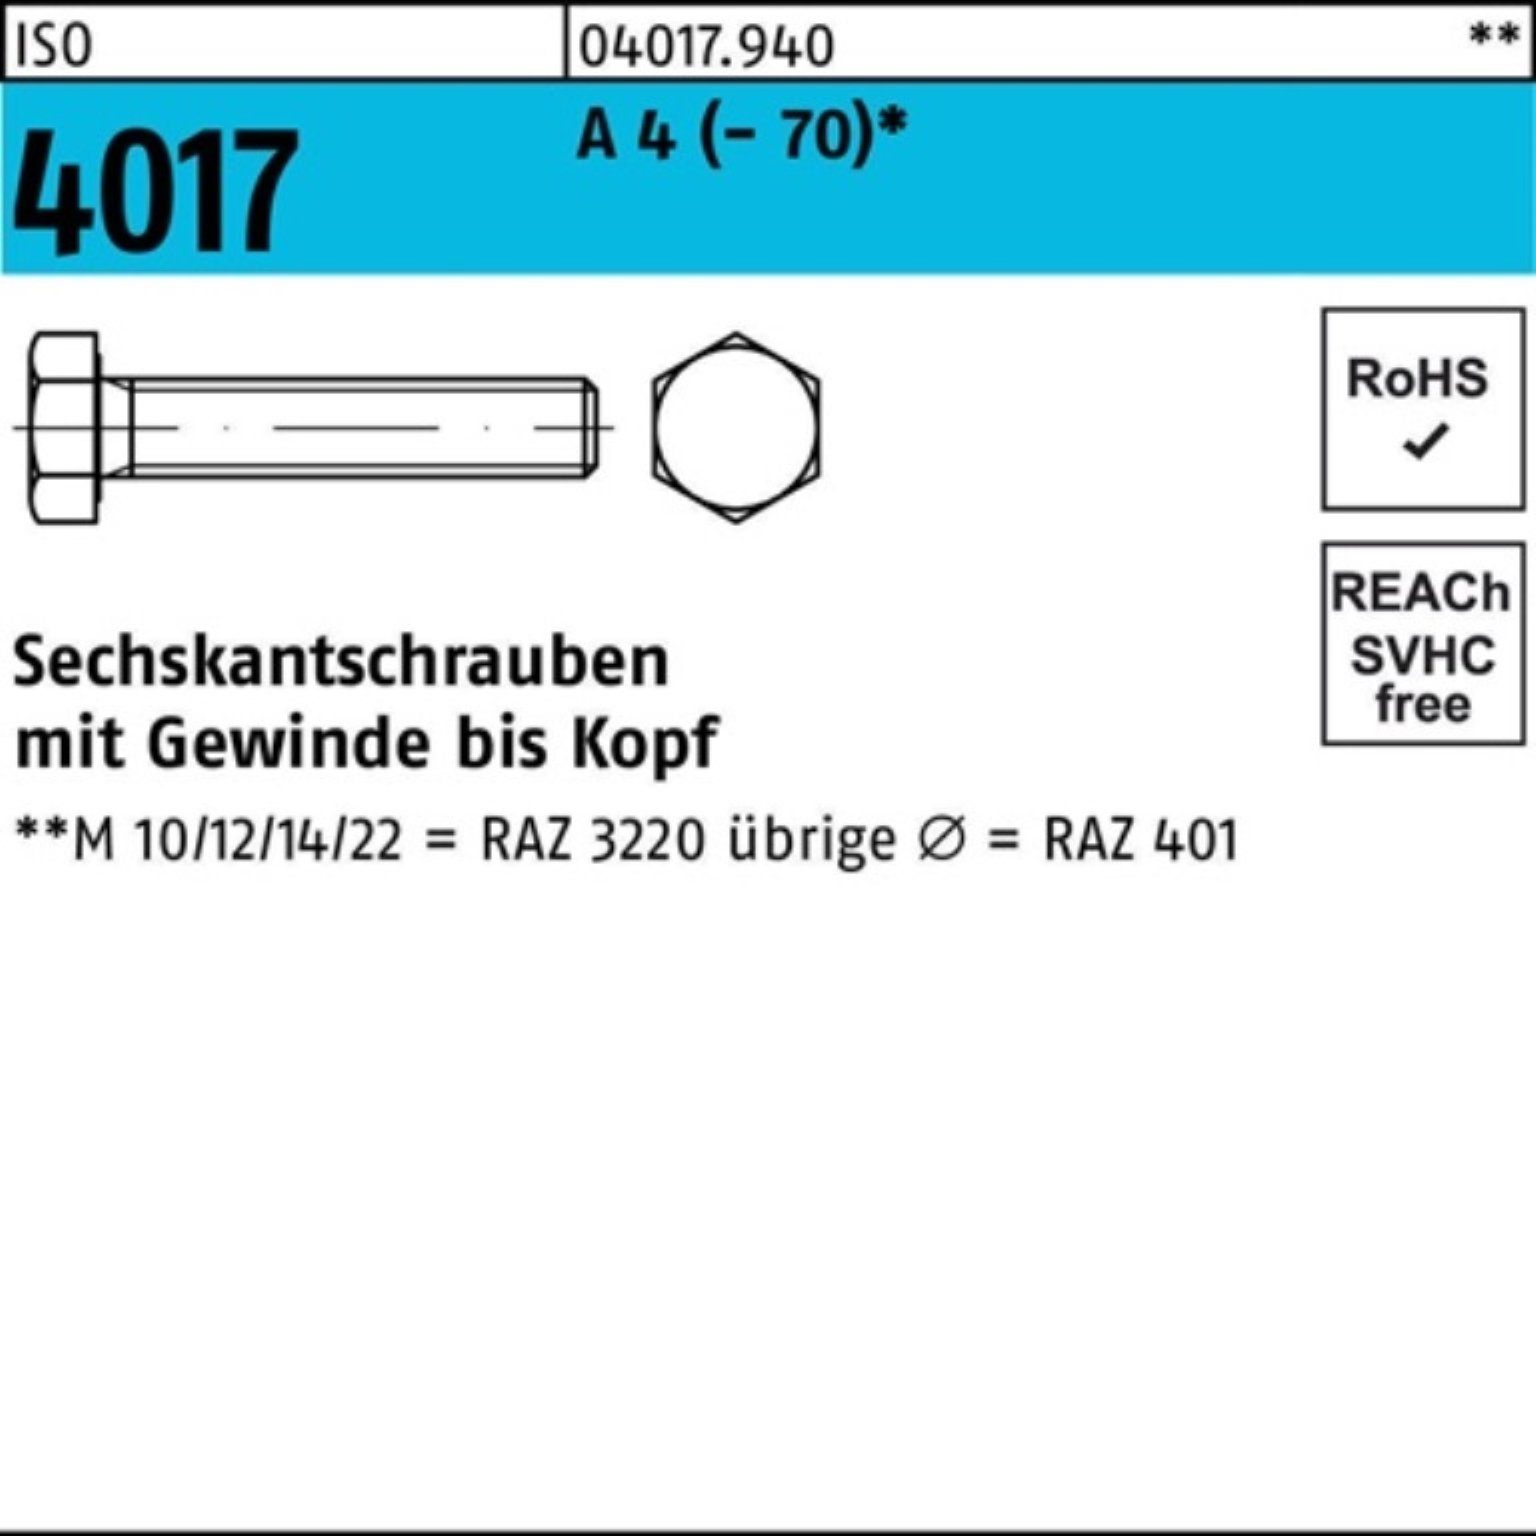 Bufab Sechskantschraube 500er Pack Sechskantschraube ISO 4017 VG M6x 12 A 4 (70) 500 Stück